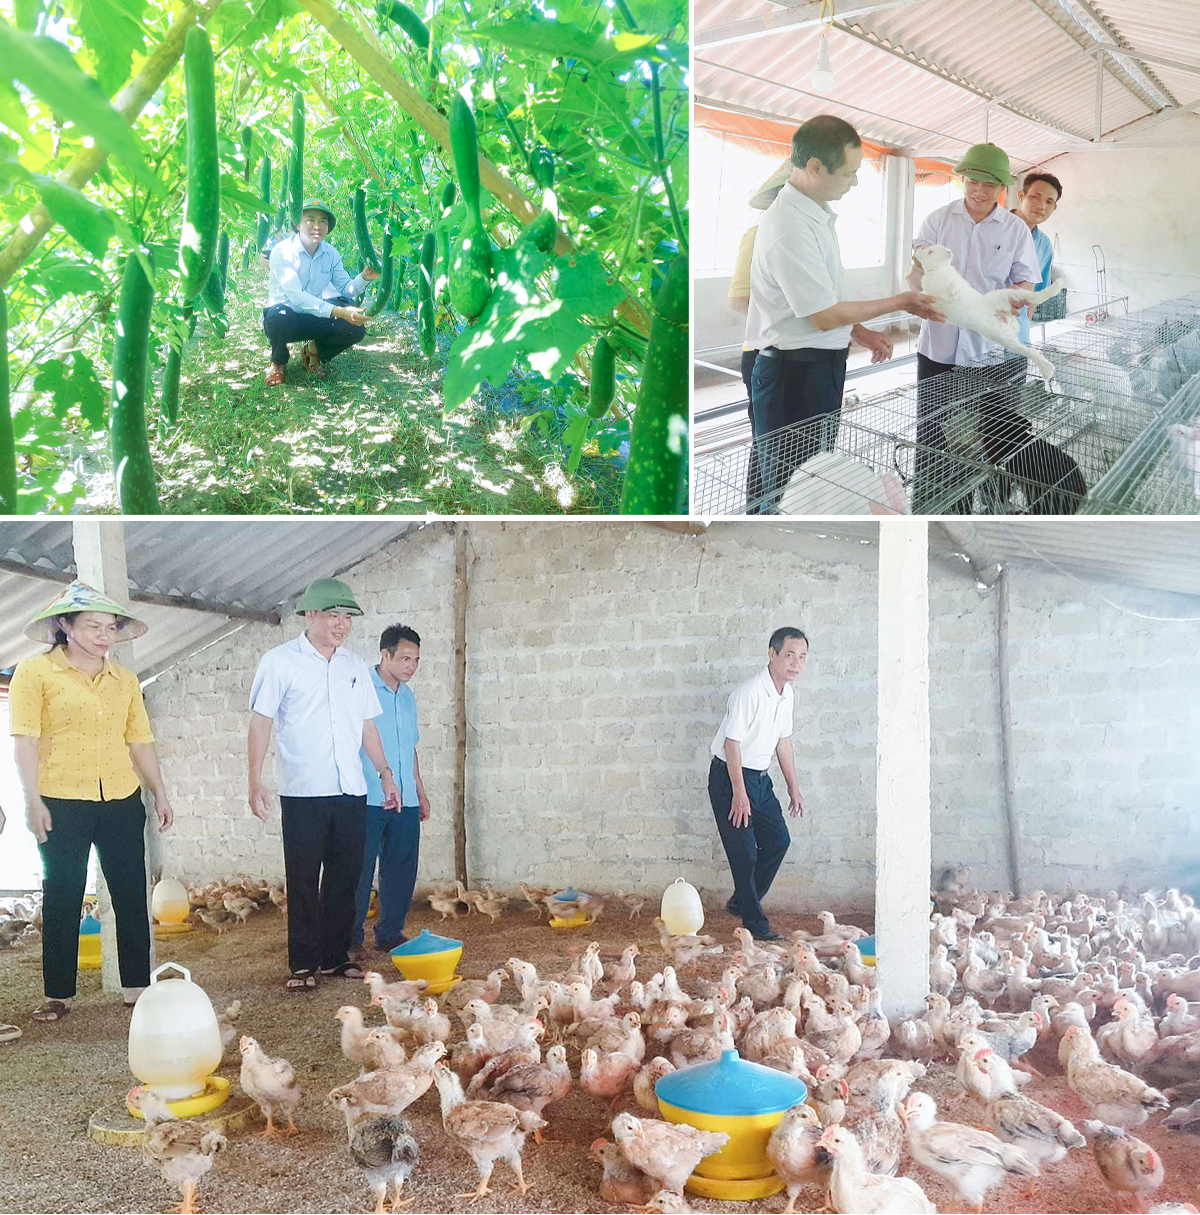 Chuyển đổi, đưa cây bí vào trồng có hiệu quả; Các mô hình nuôi thỏ, gà tại xã Thanh Xuân. Ảnh: M.H